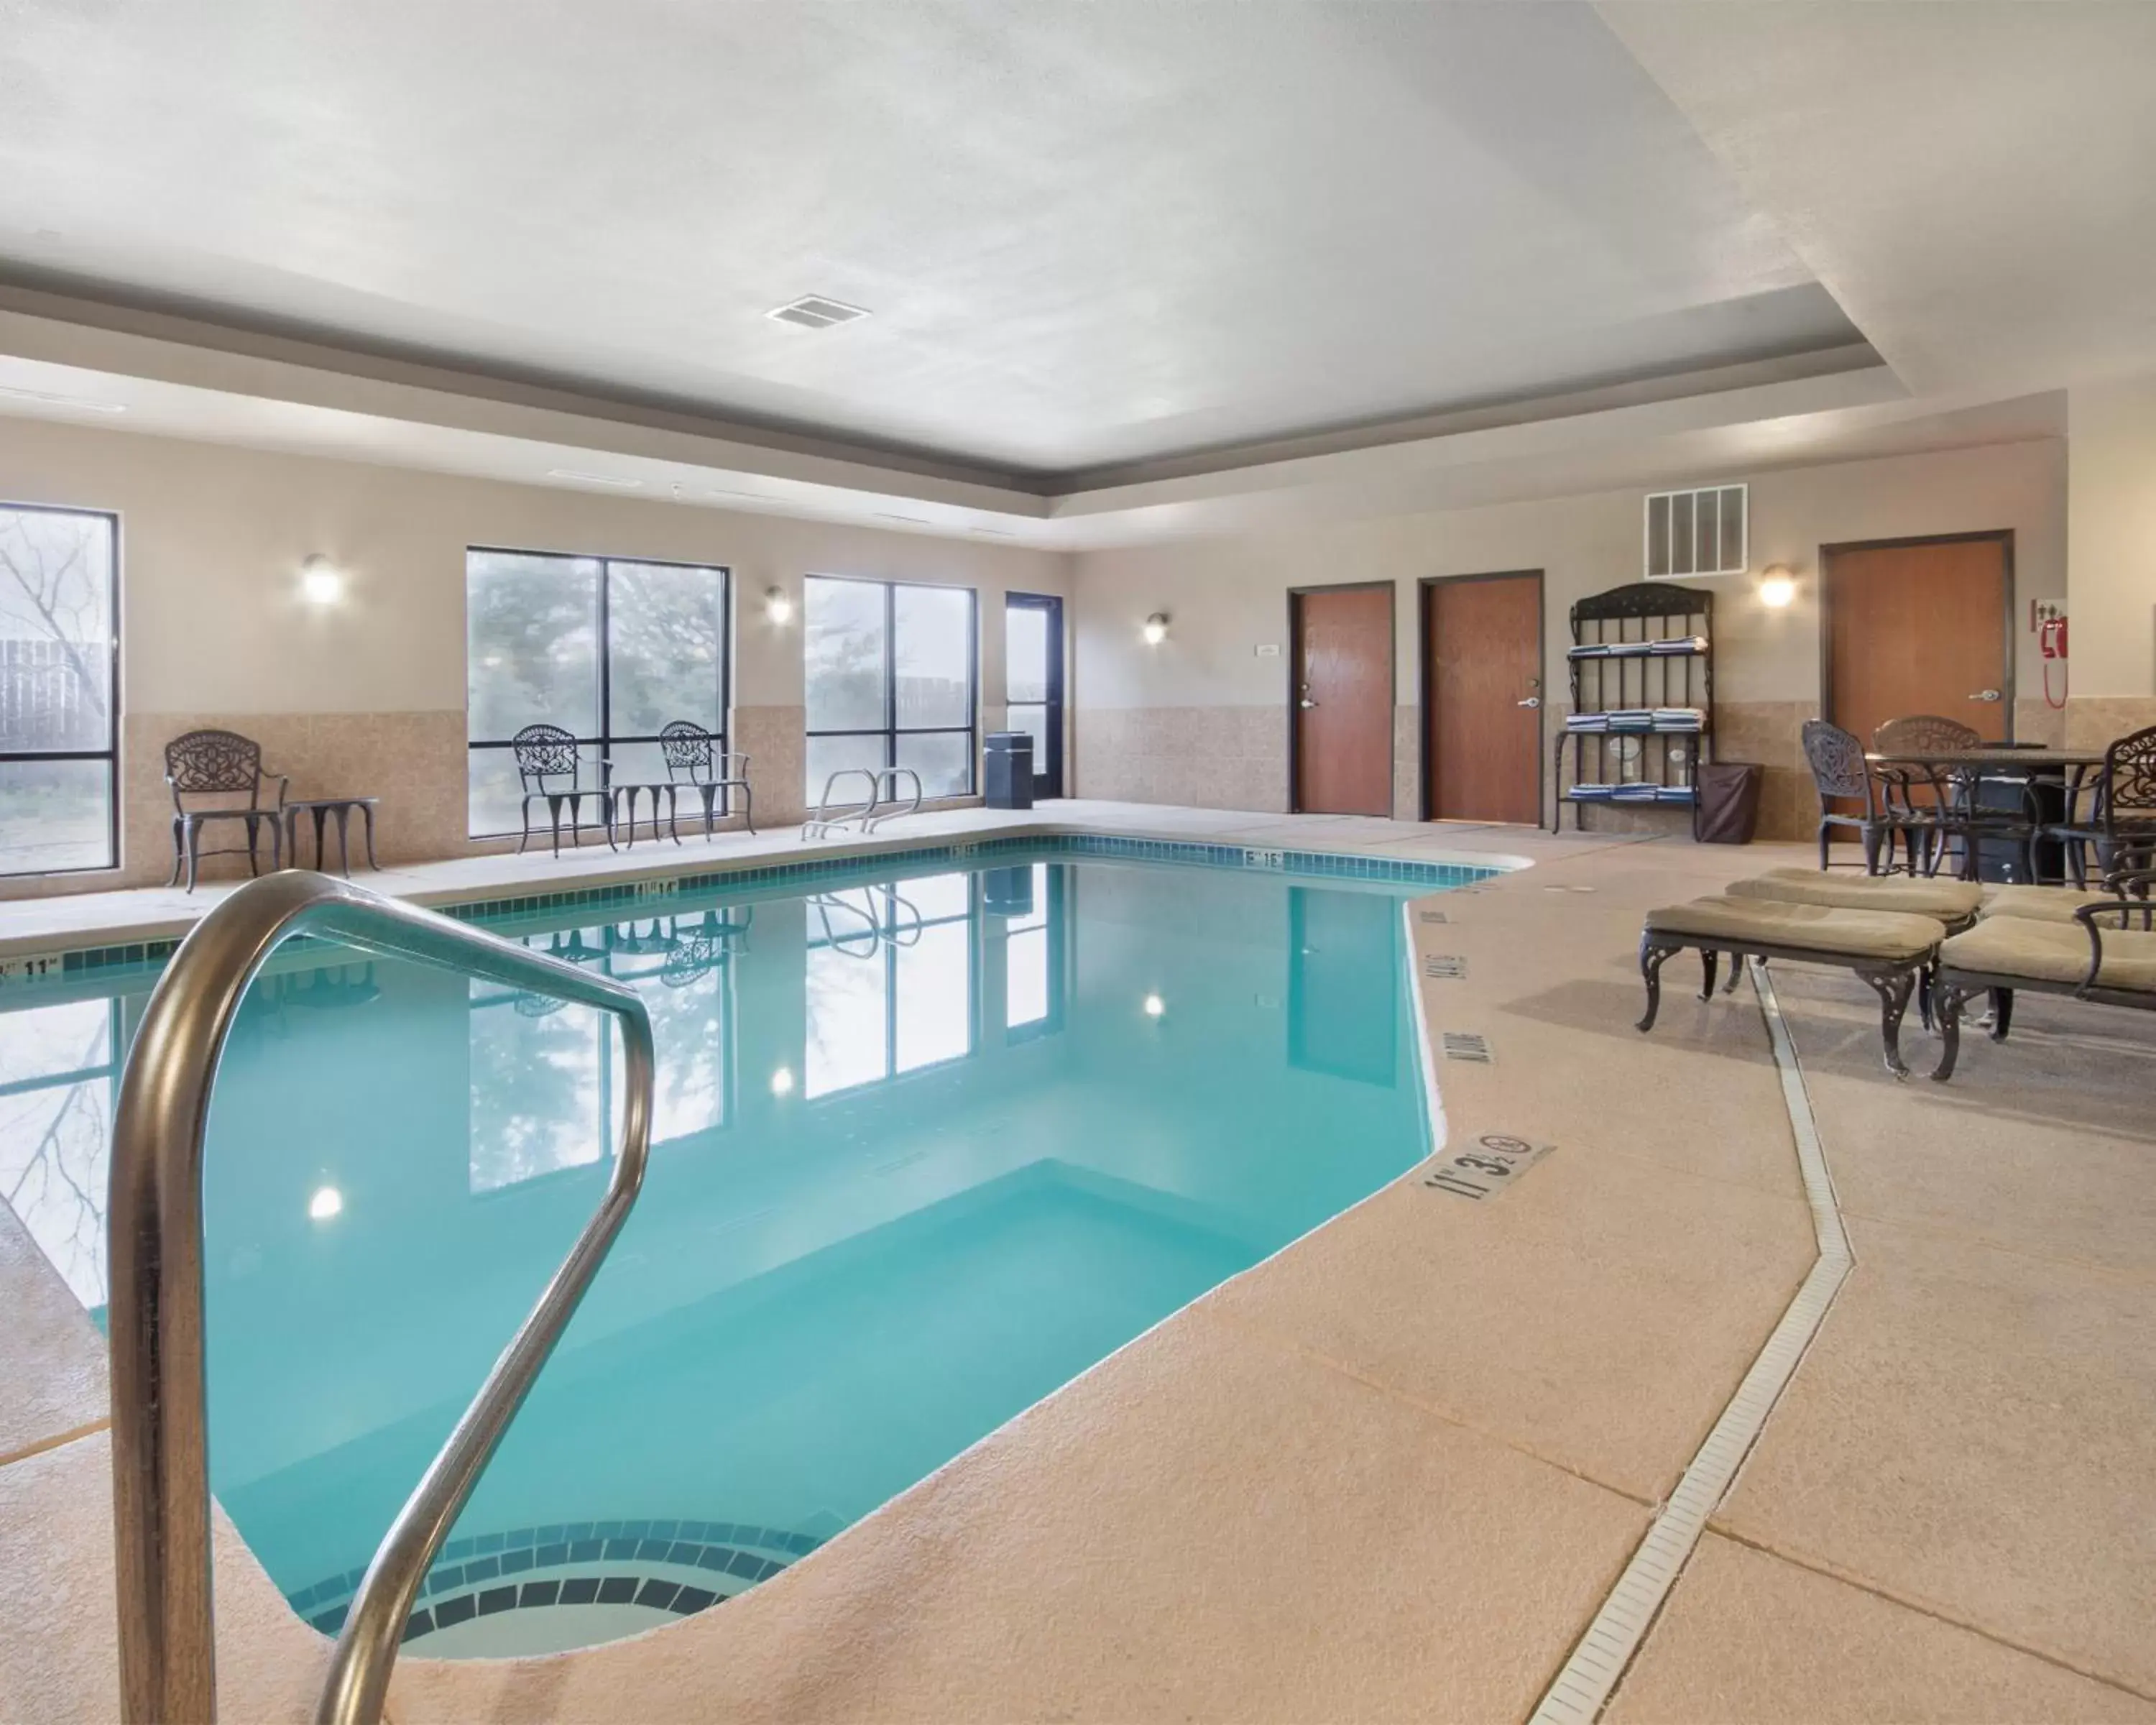 Swimming Pool in MainStay Suites Hobbs